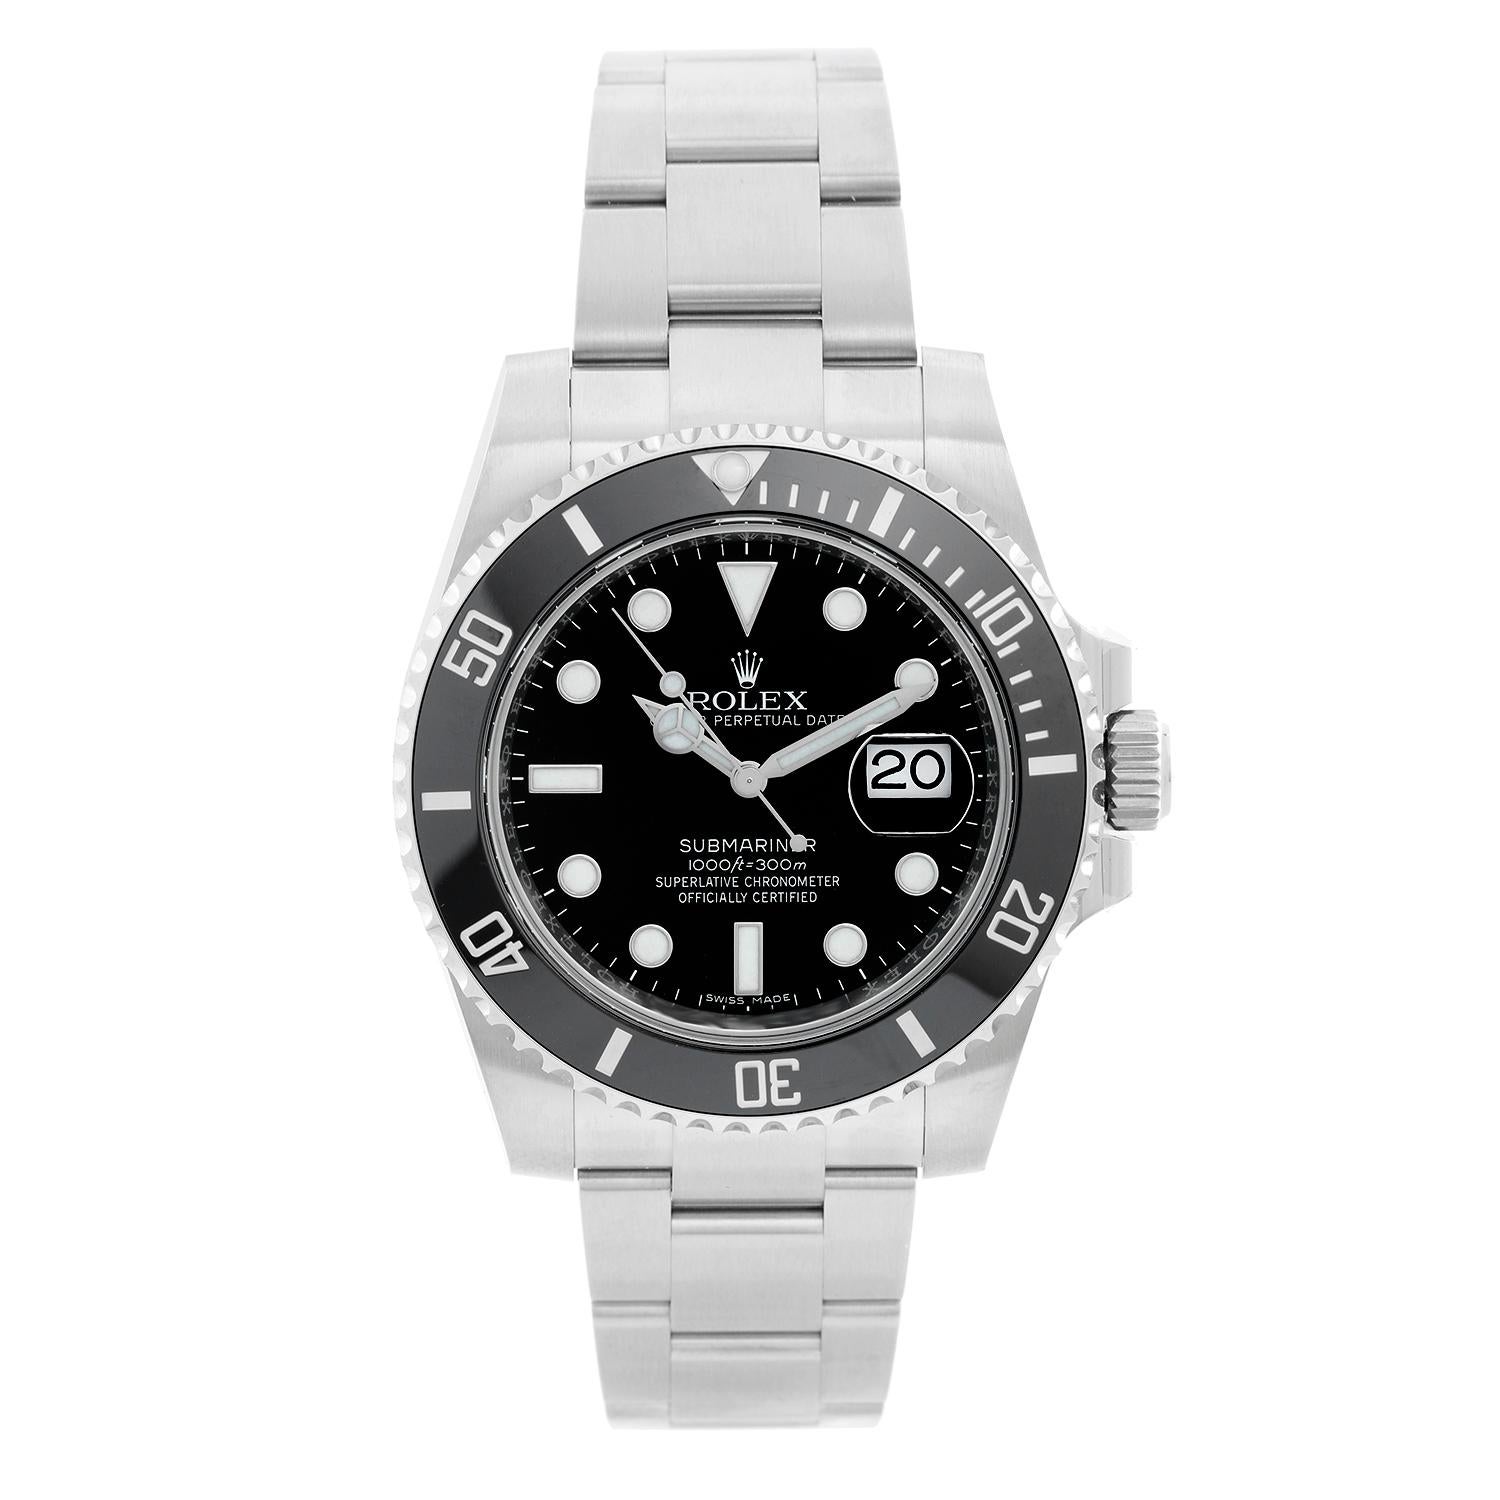 Rolex Submariner Men's Stainless Steel Watch 116610 LN